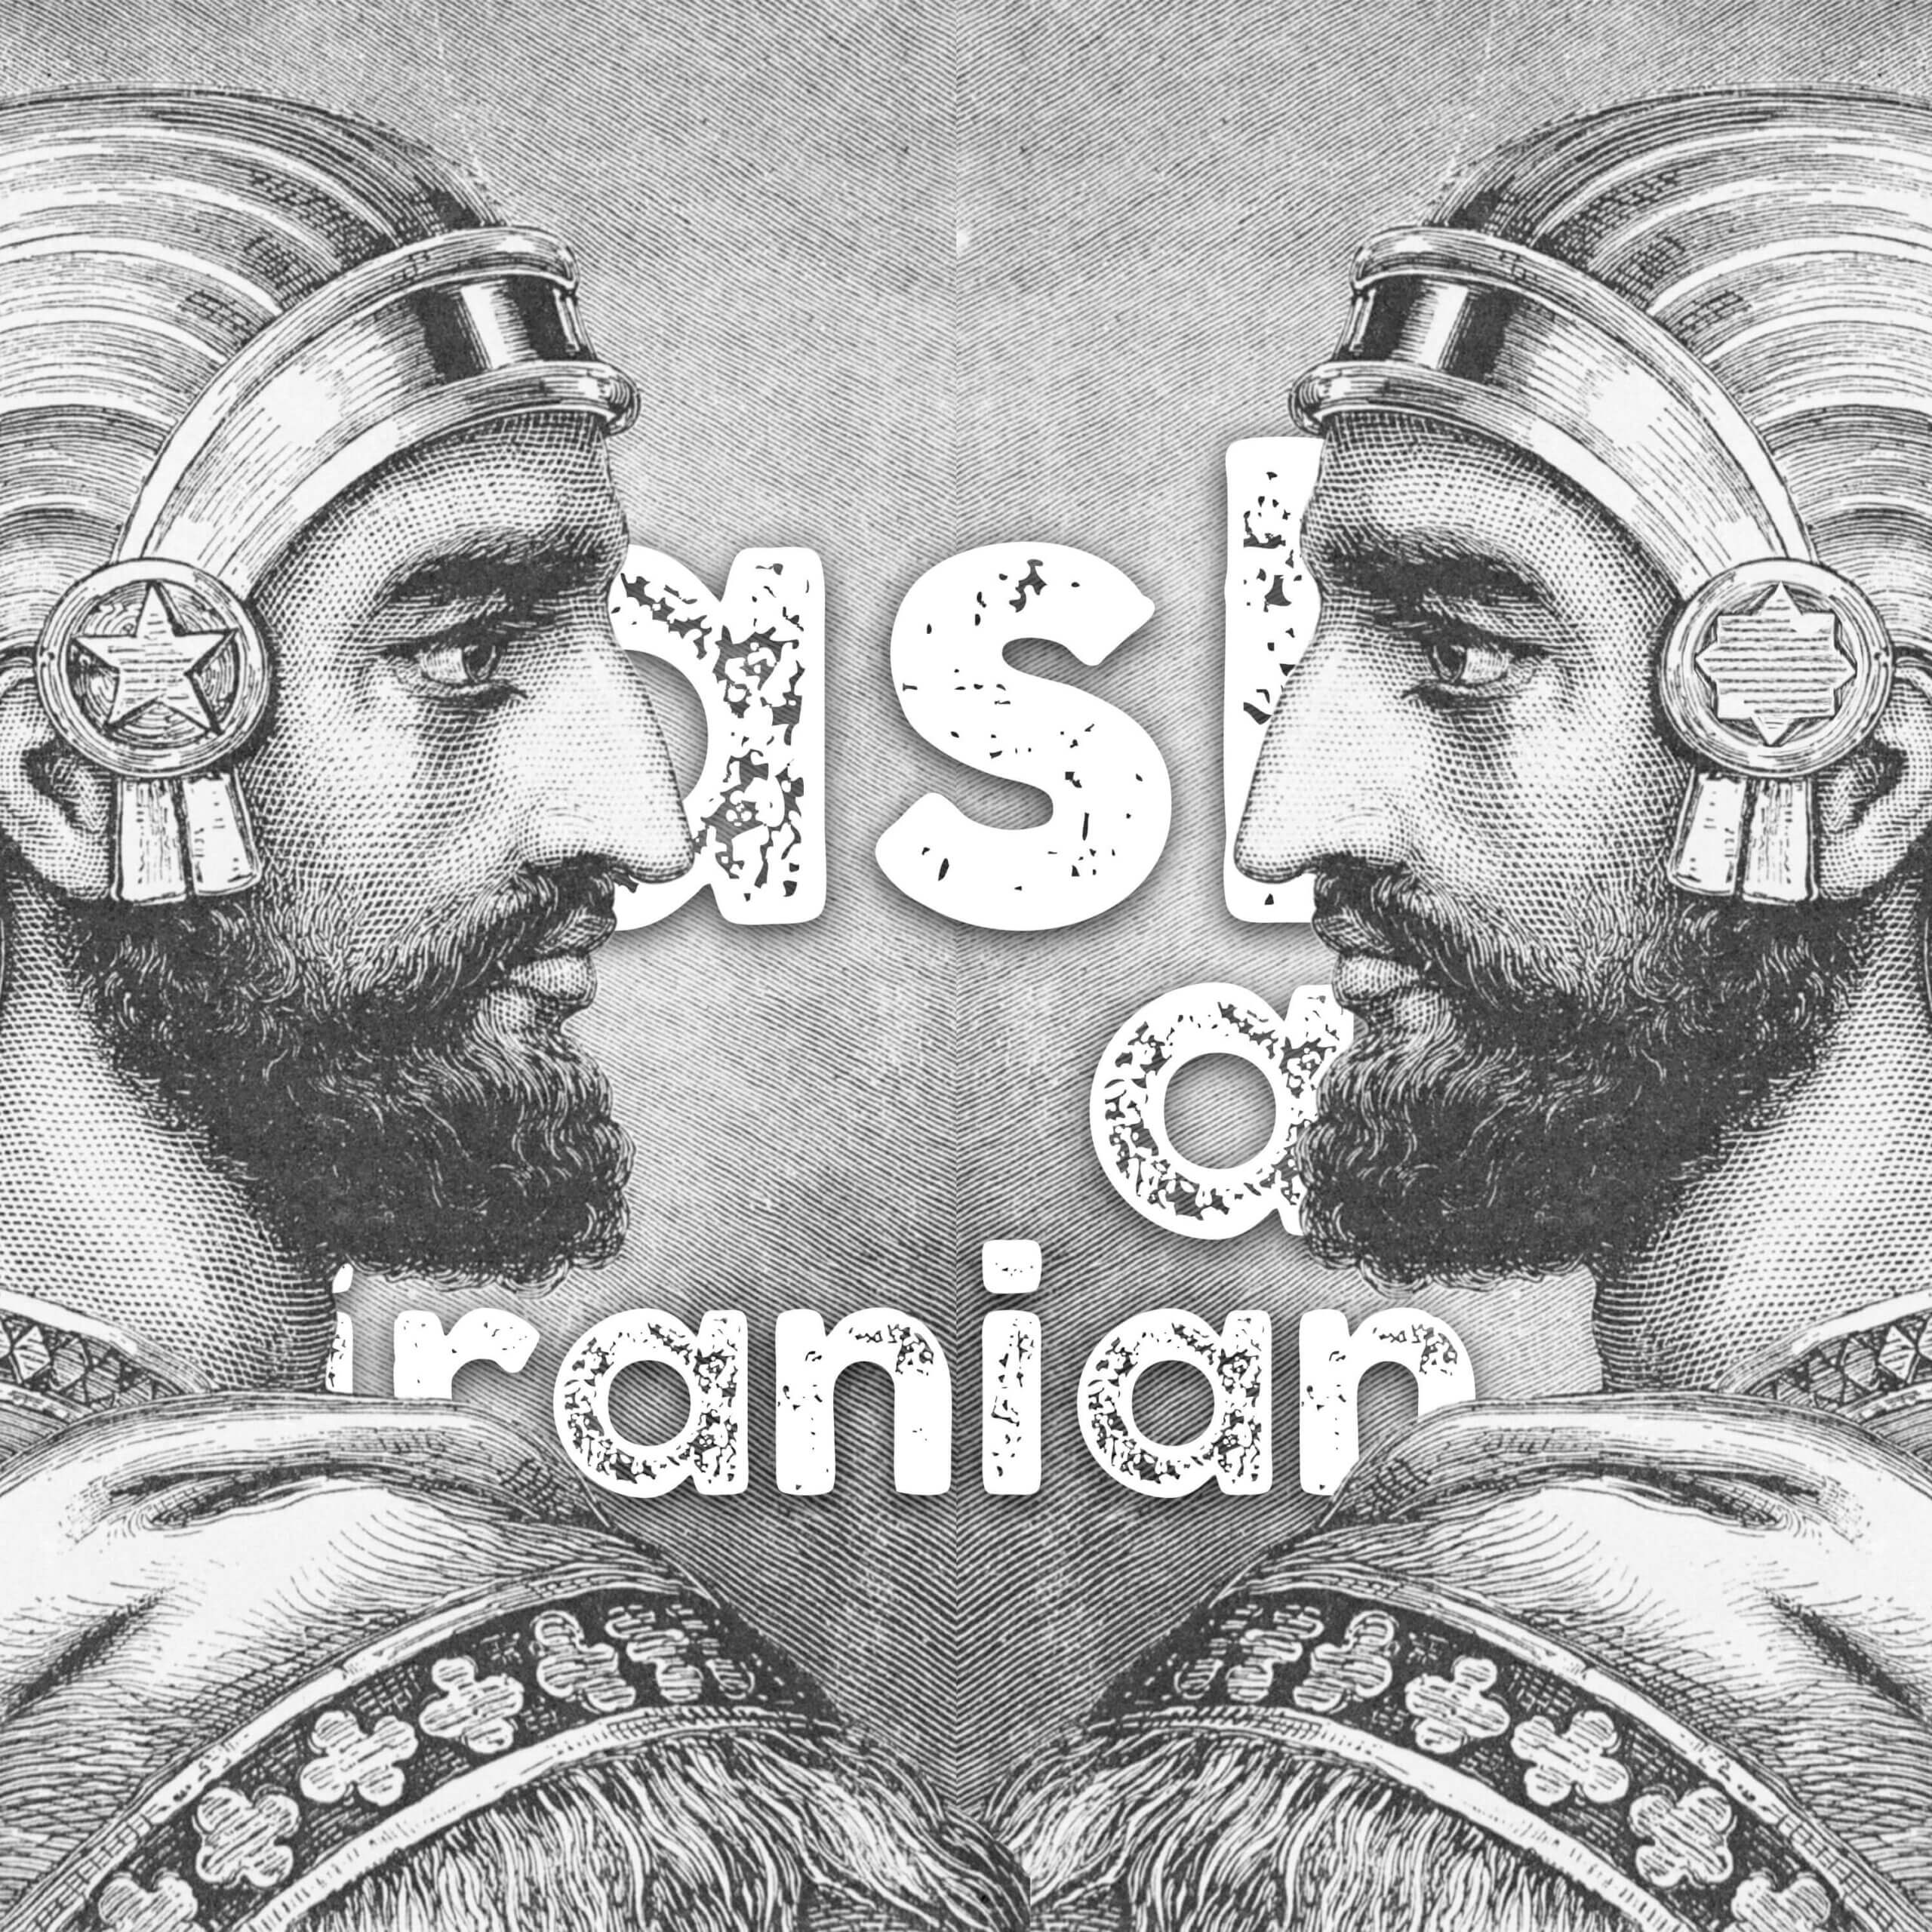 Persians vs. Iranians… who wins?